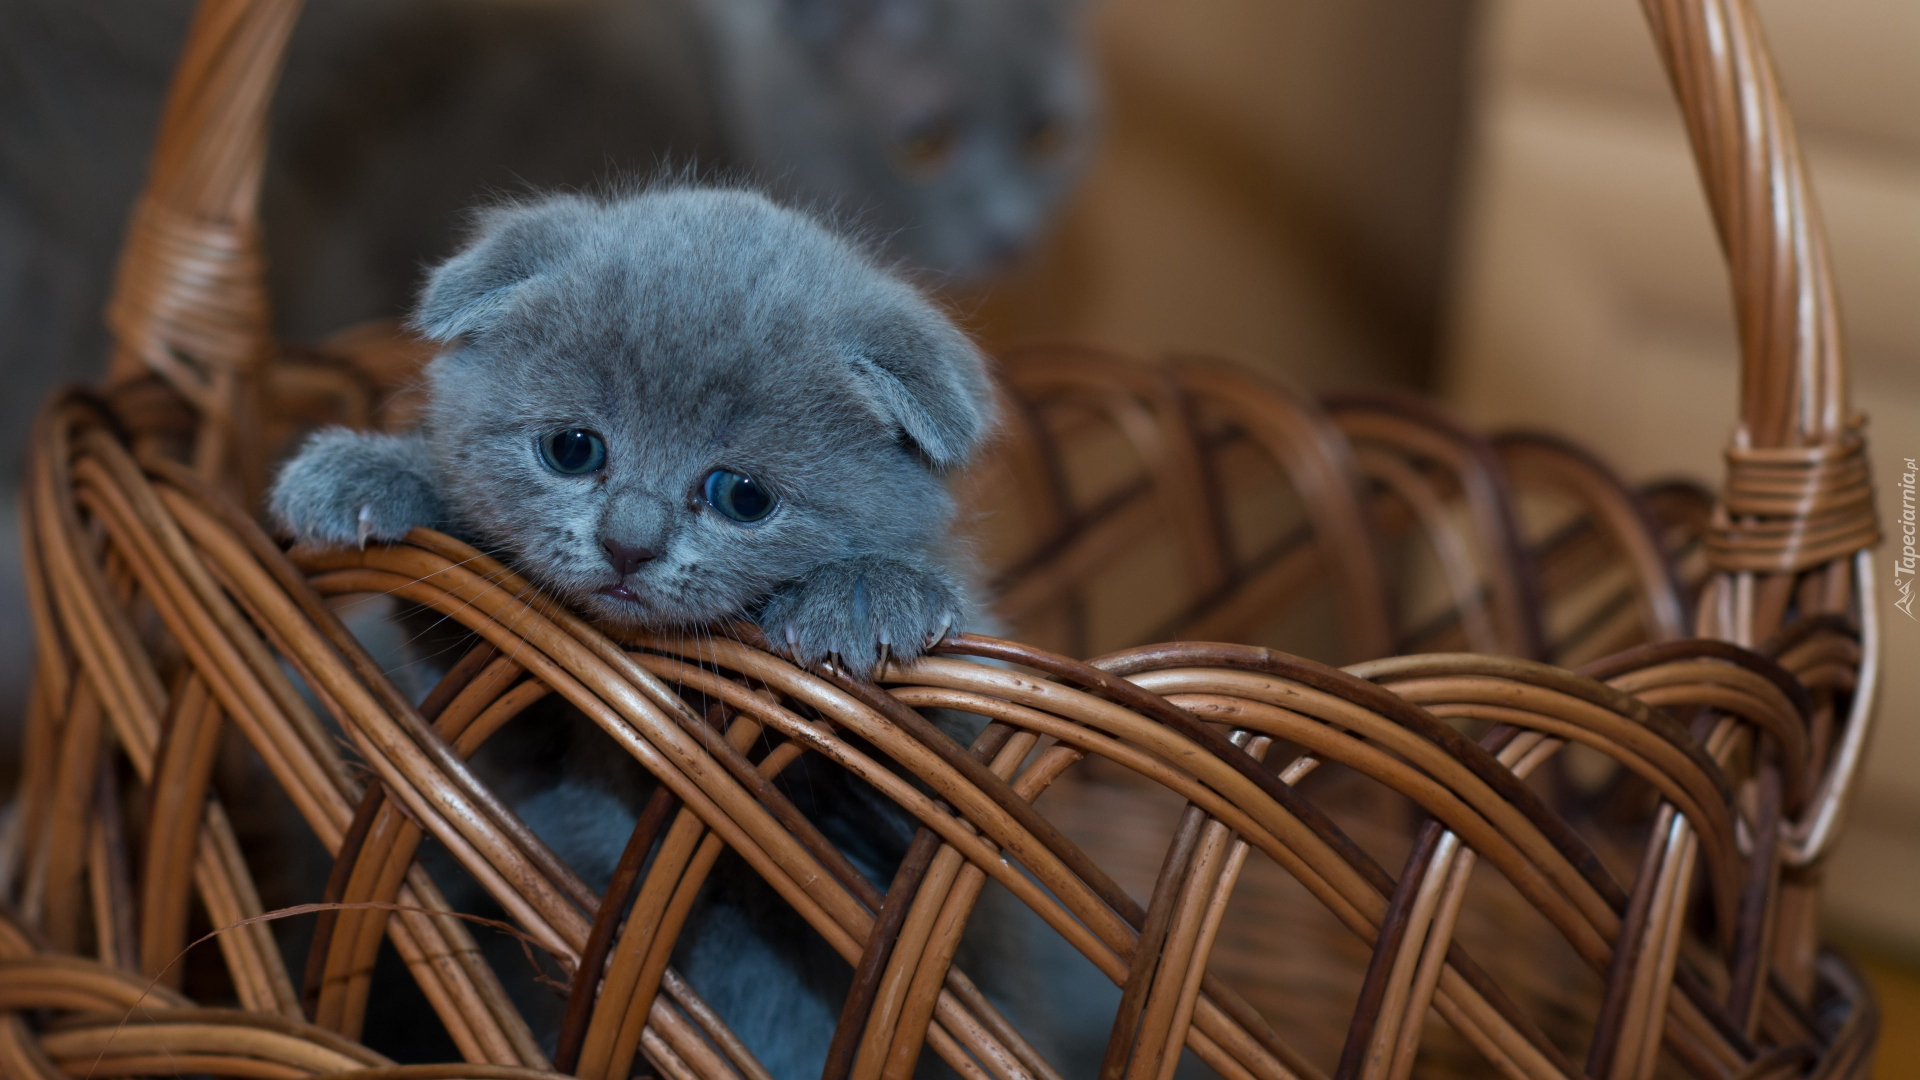 Mały, Kot brytyjski krótkowłosy niebieski